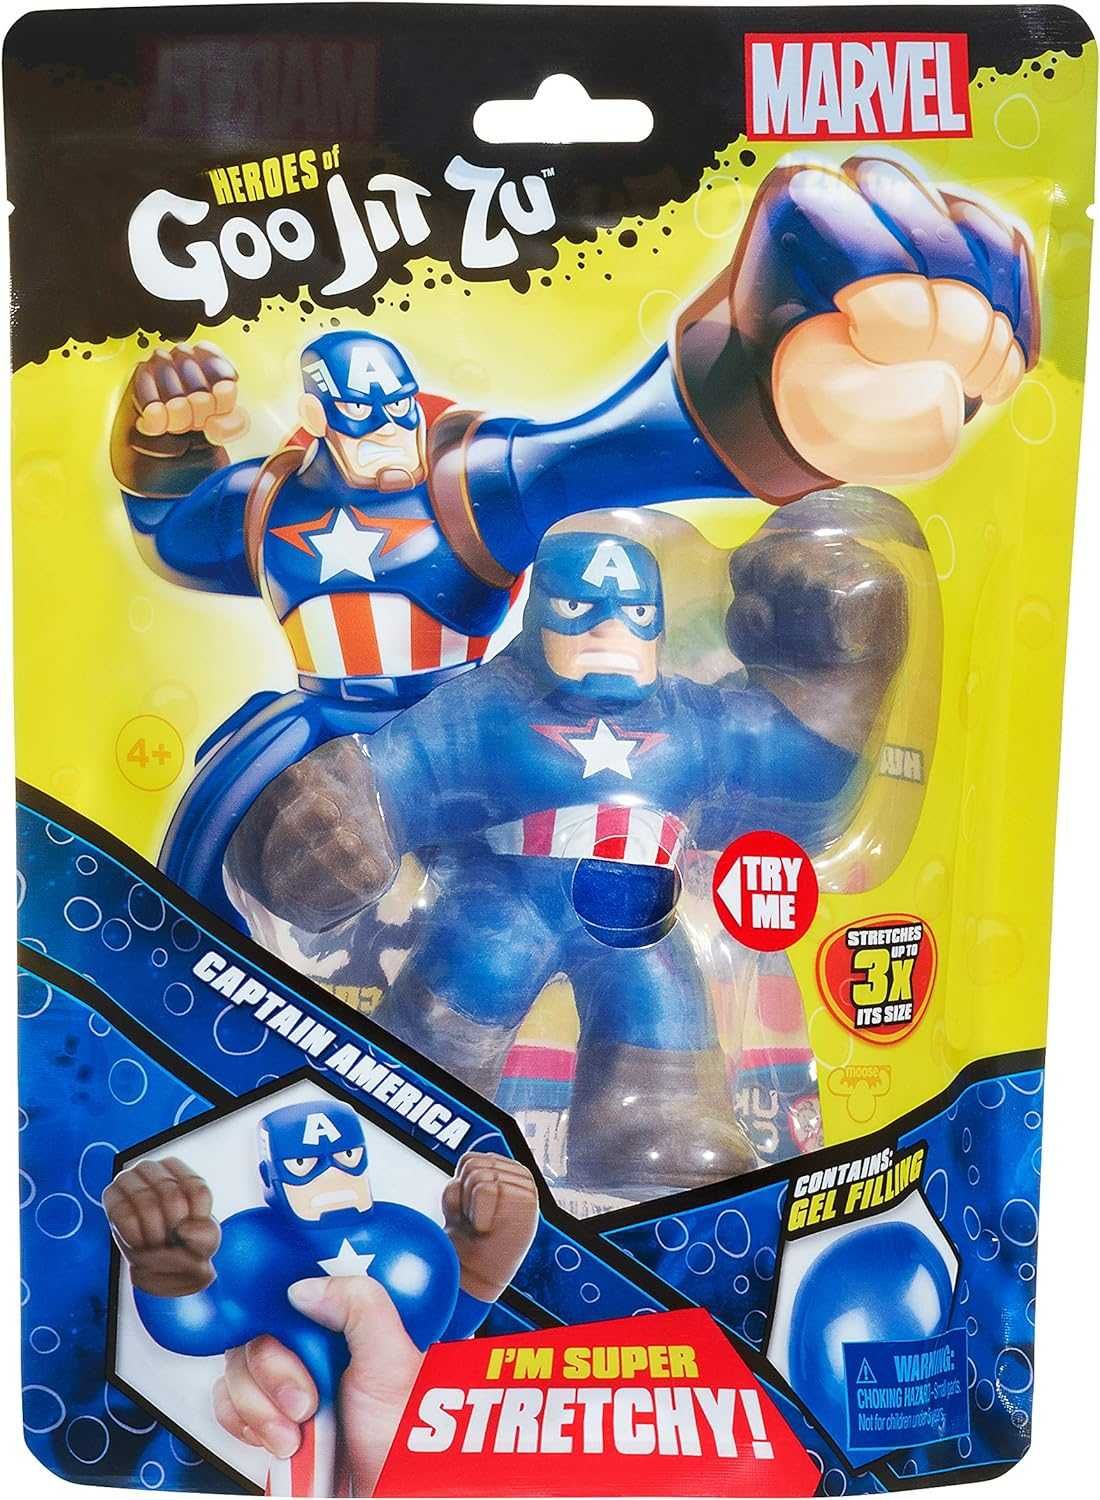 Фигурка Гуджитсу Капитан Америка Heroes of Goo Jit Zu Captain America